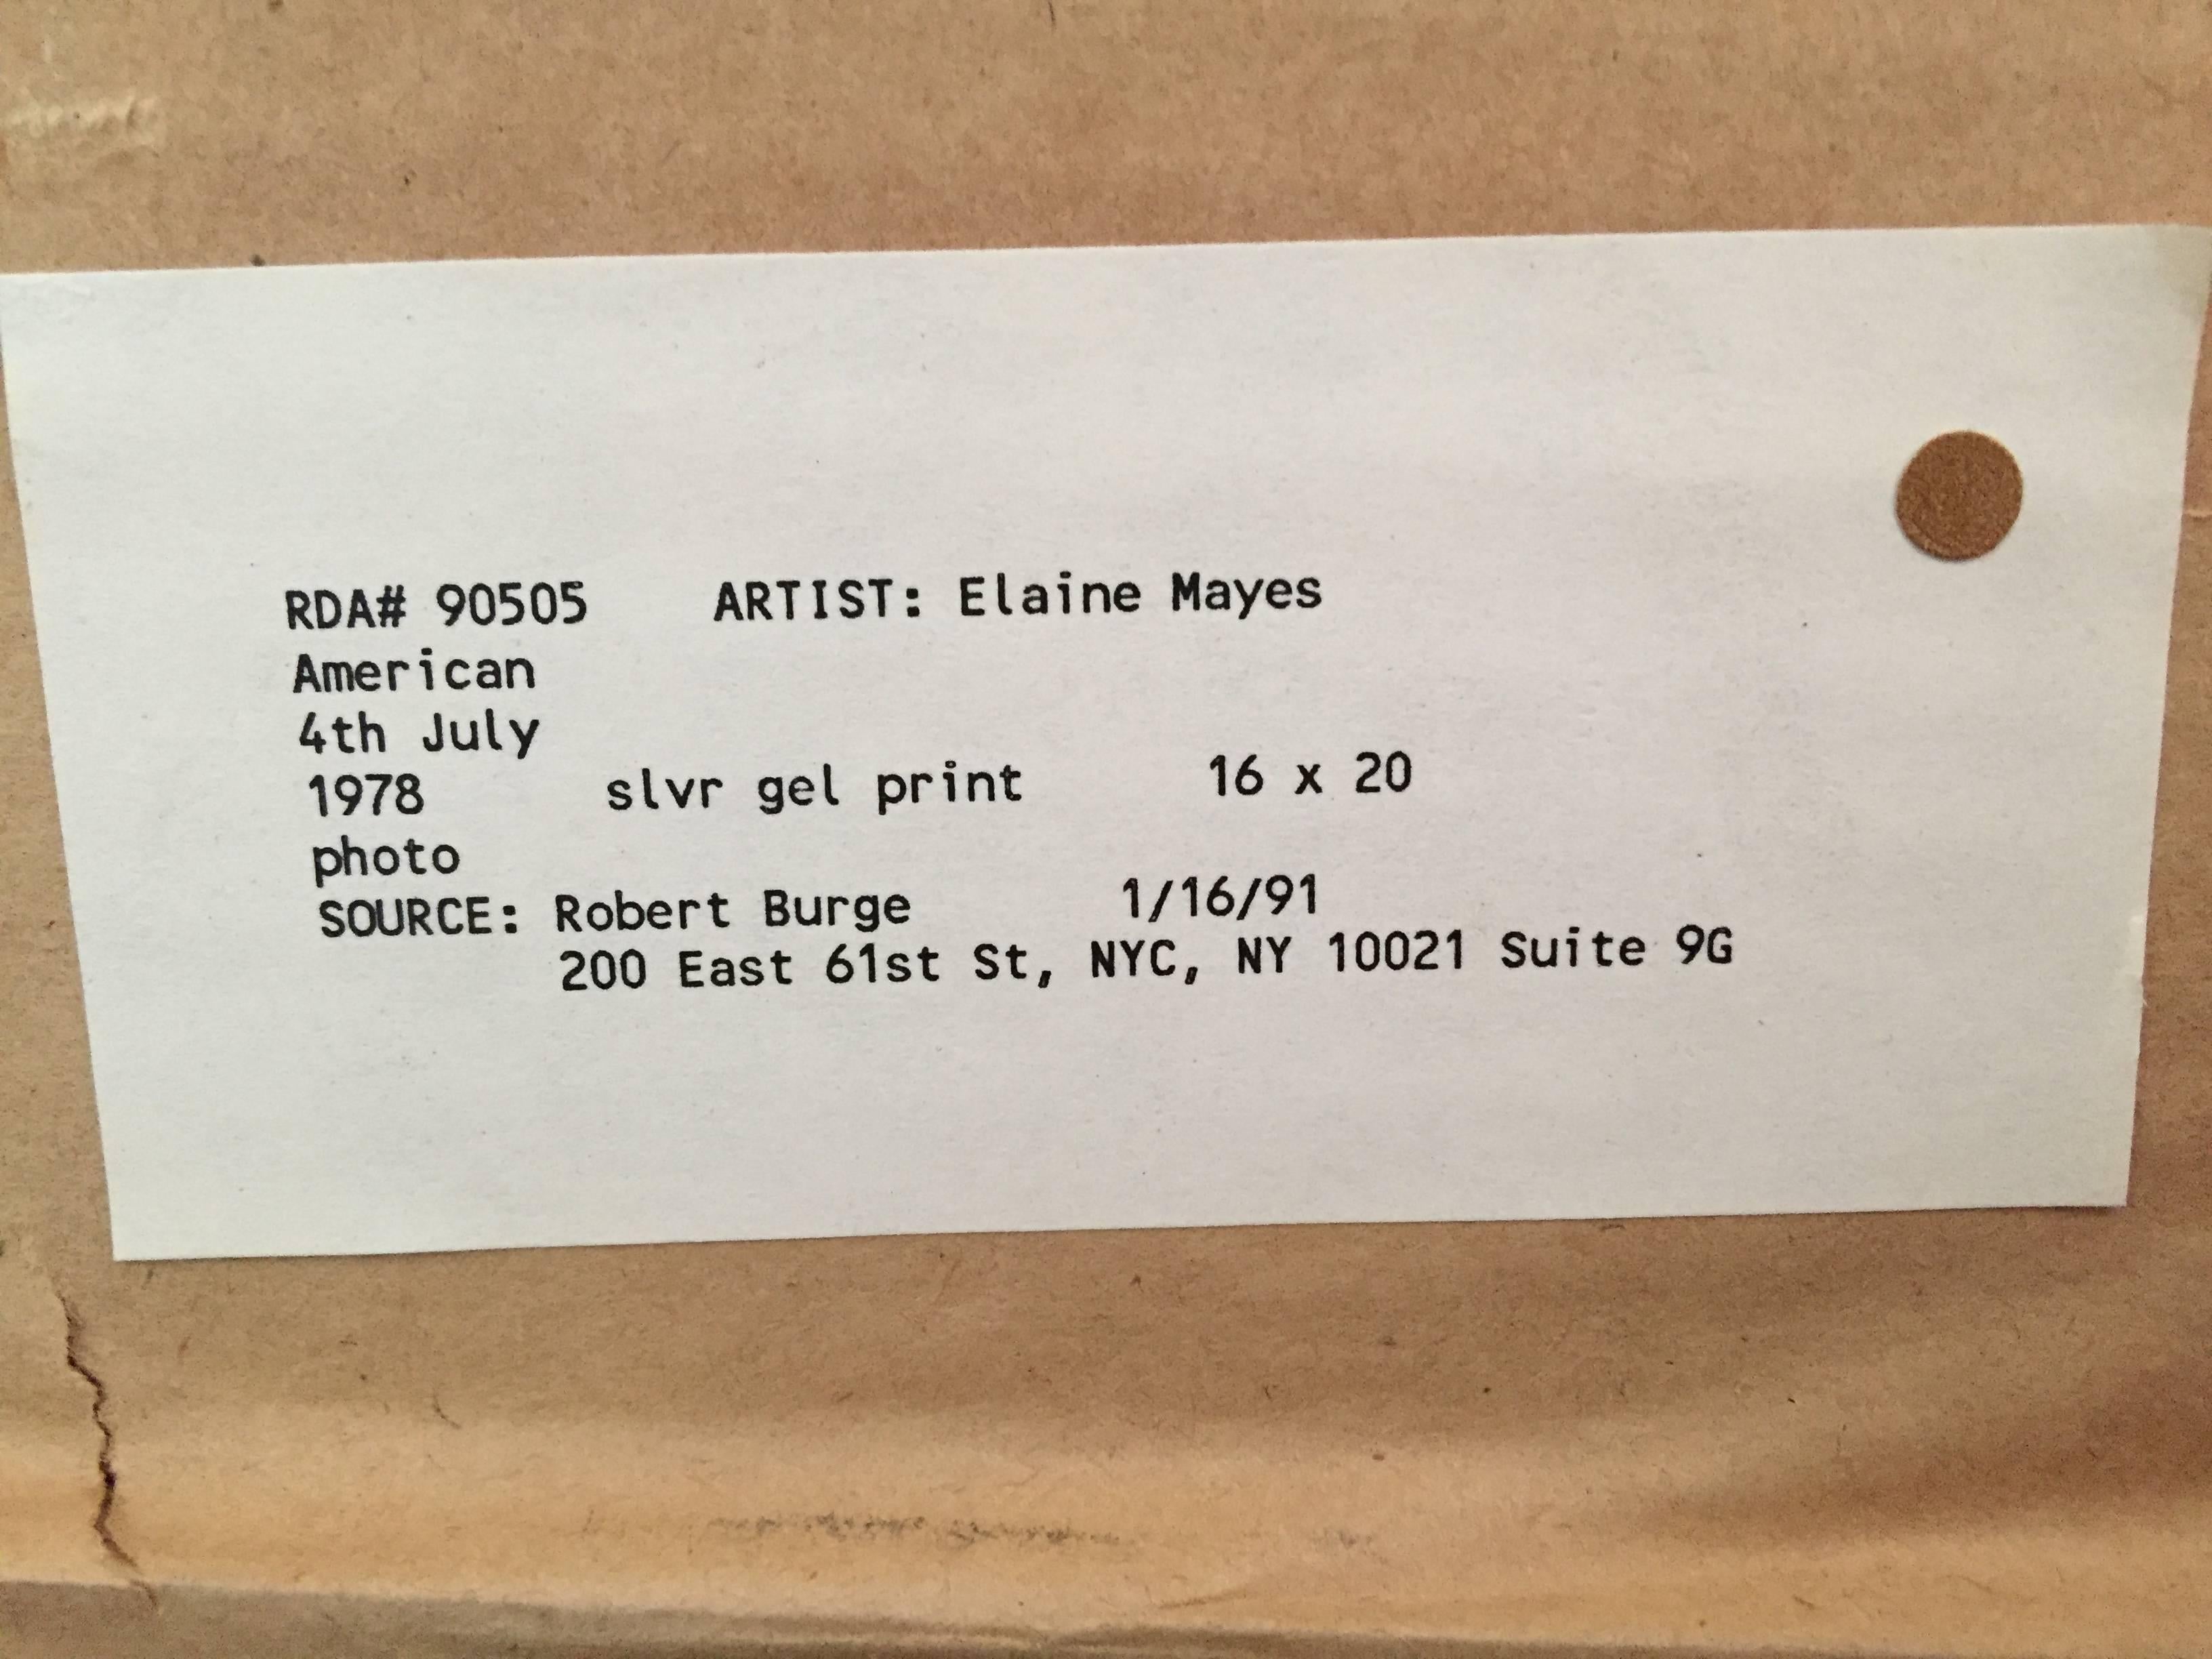 Vintage Schwarzweiß-Silbergelatineabzug, 1978, American 4th July.

Elaine Mayes, geboren 1936, ist eine amerikanische Fotografin und Professorin im Ruhestand an der Tisch School of the Arts der New York University.

Ab 1968 unterrichtete sie an der